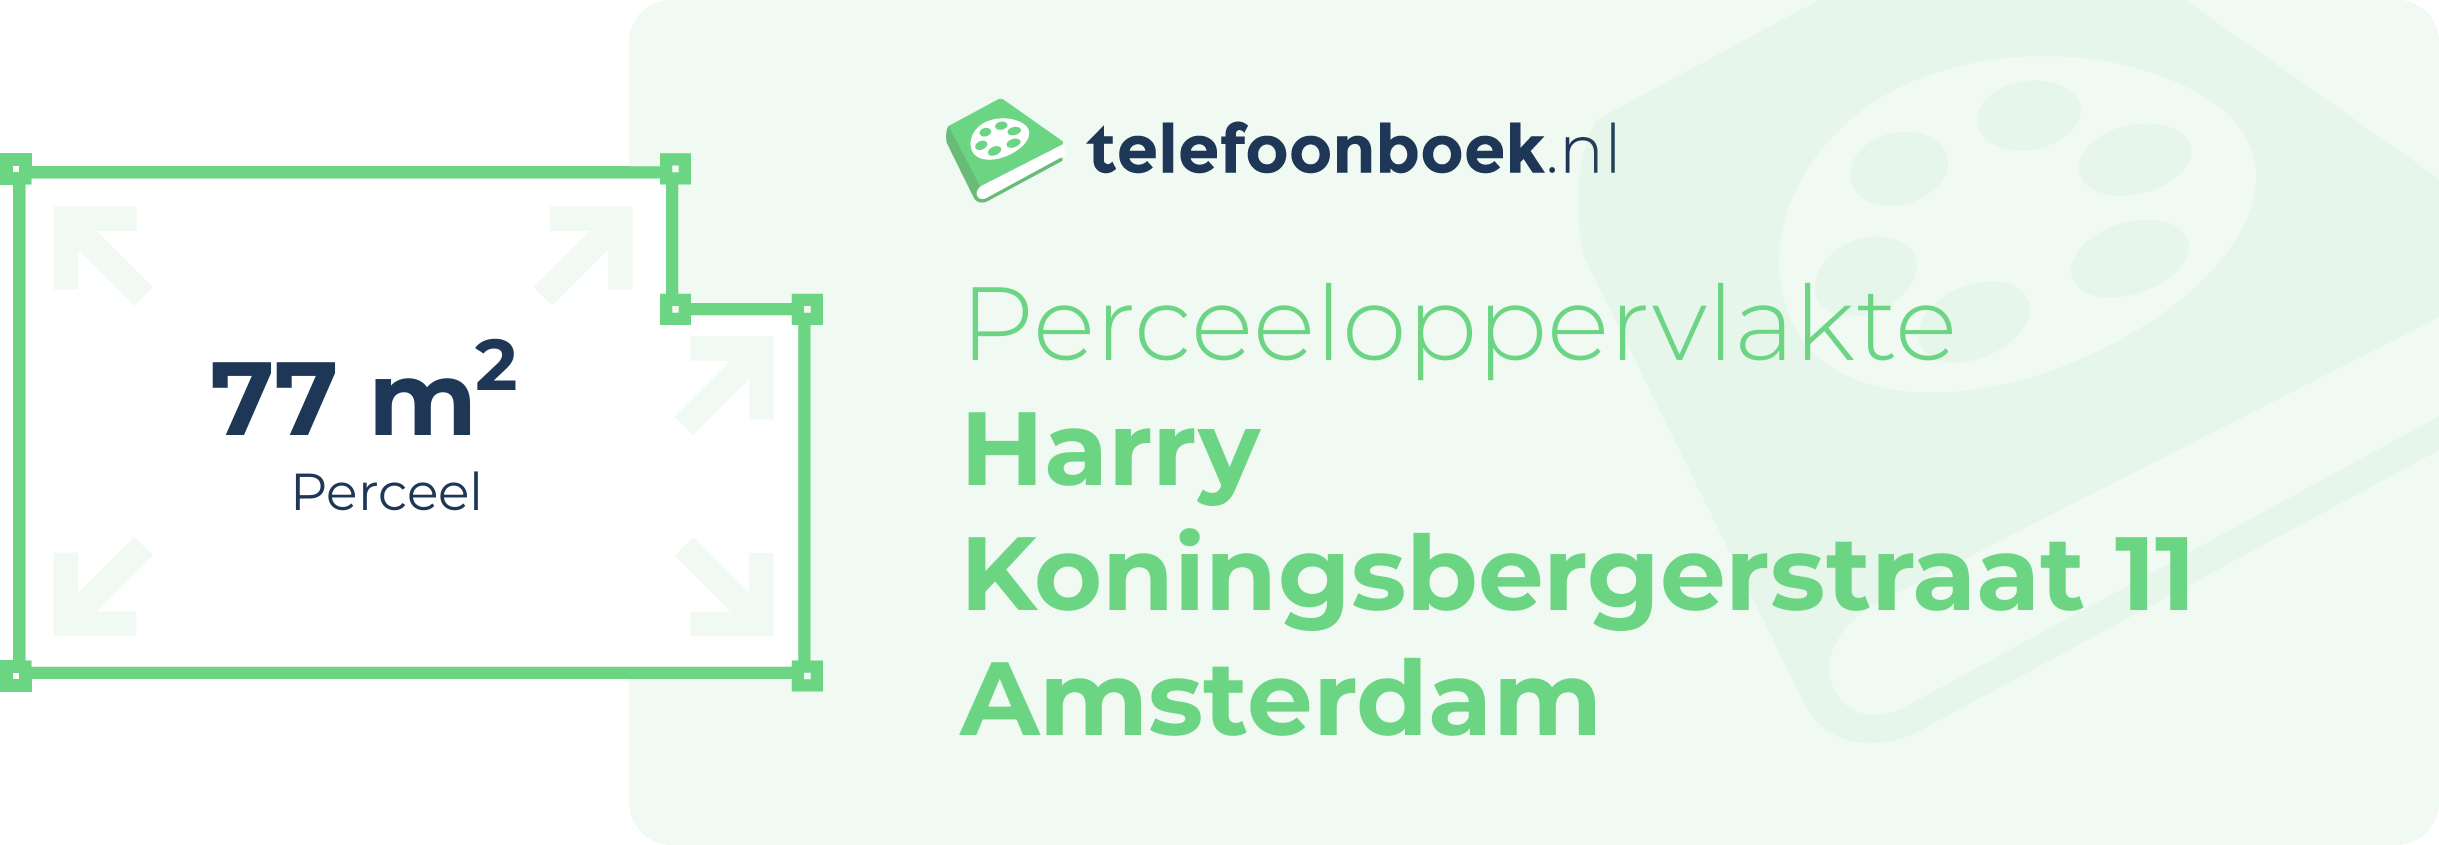 Perceeloppervlakte Harry Koningsbergerstraat 11 Amsterdam